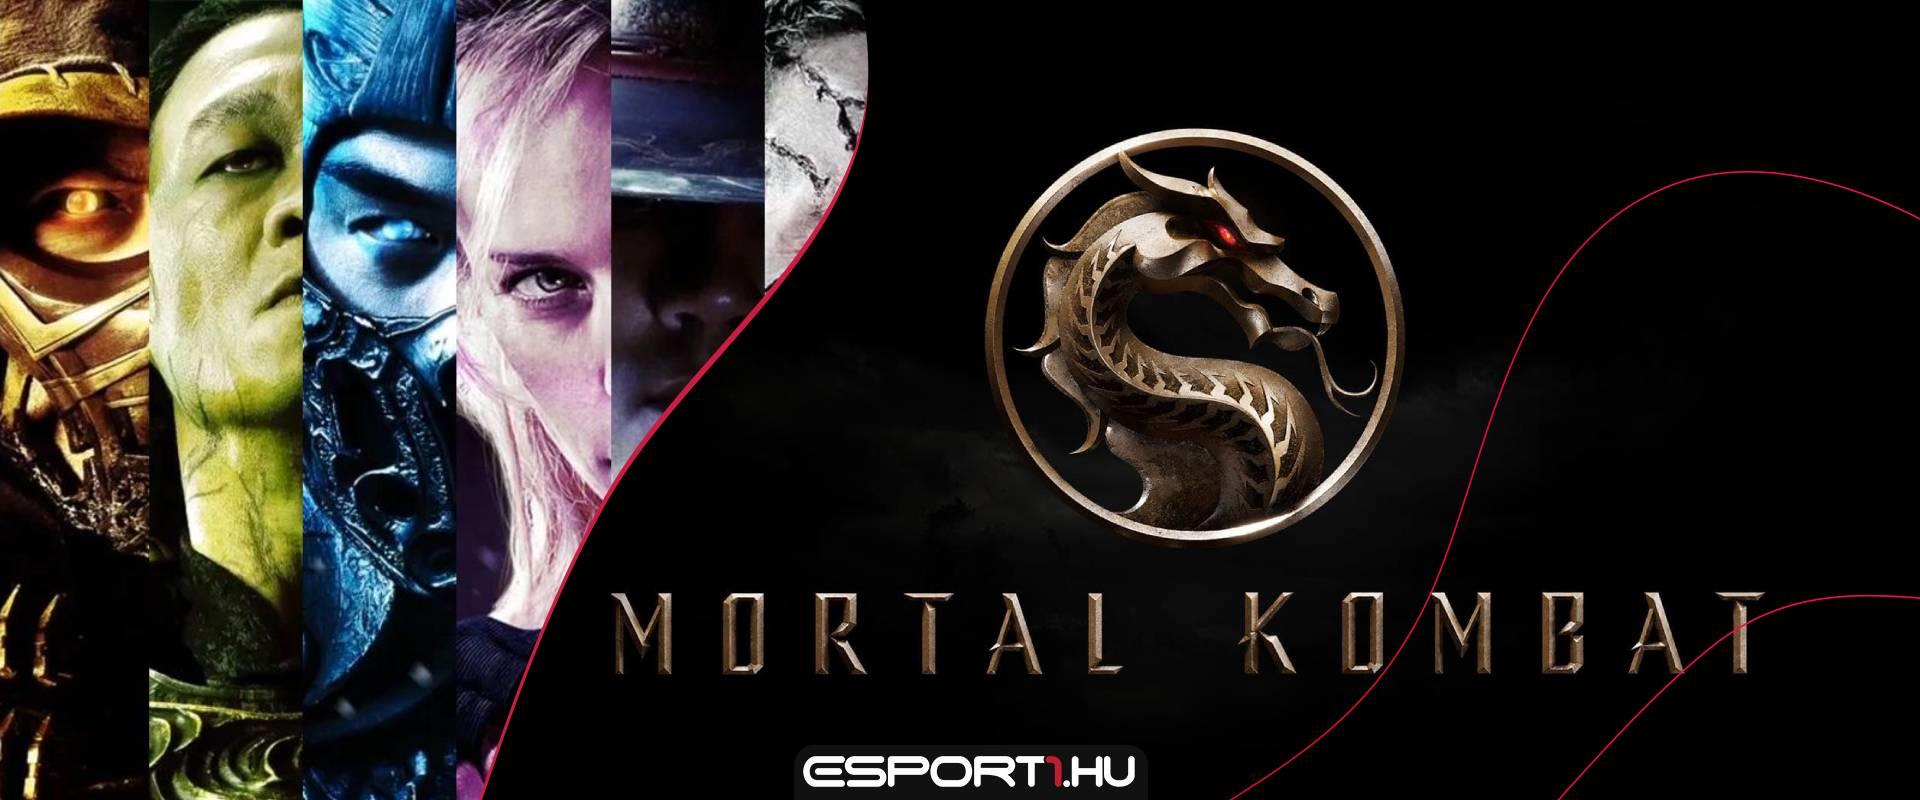 Még meg sem jelent, de máris rekordot döntött az új Mortal Kombat film!